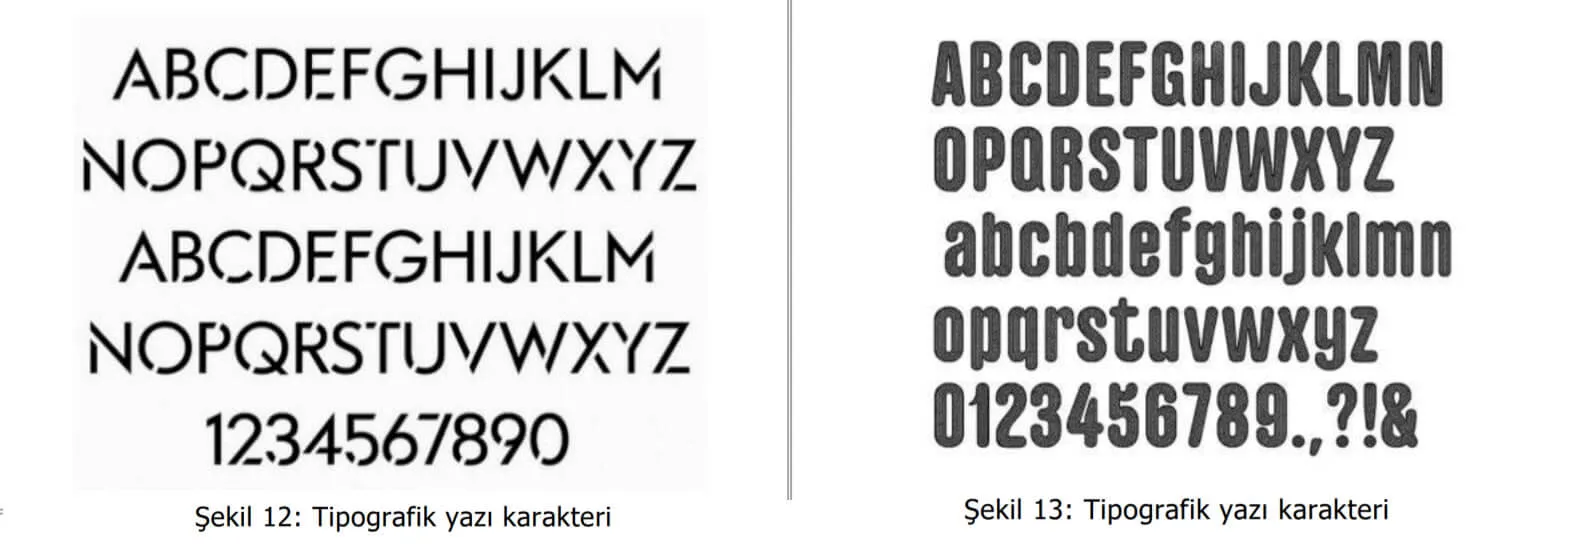 tipografik yazı karakter örnekleri-kadıköy patent